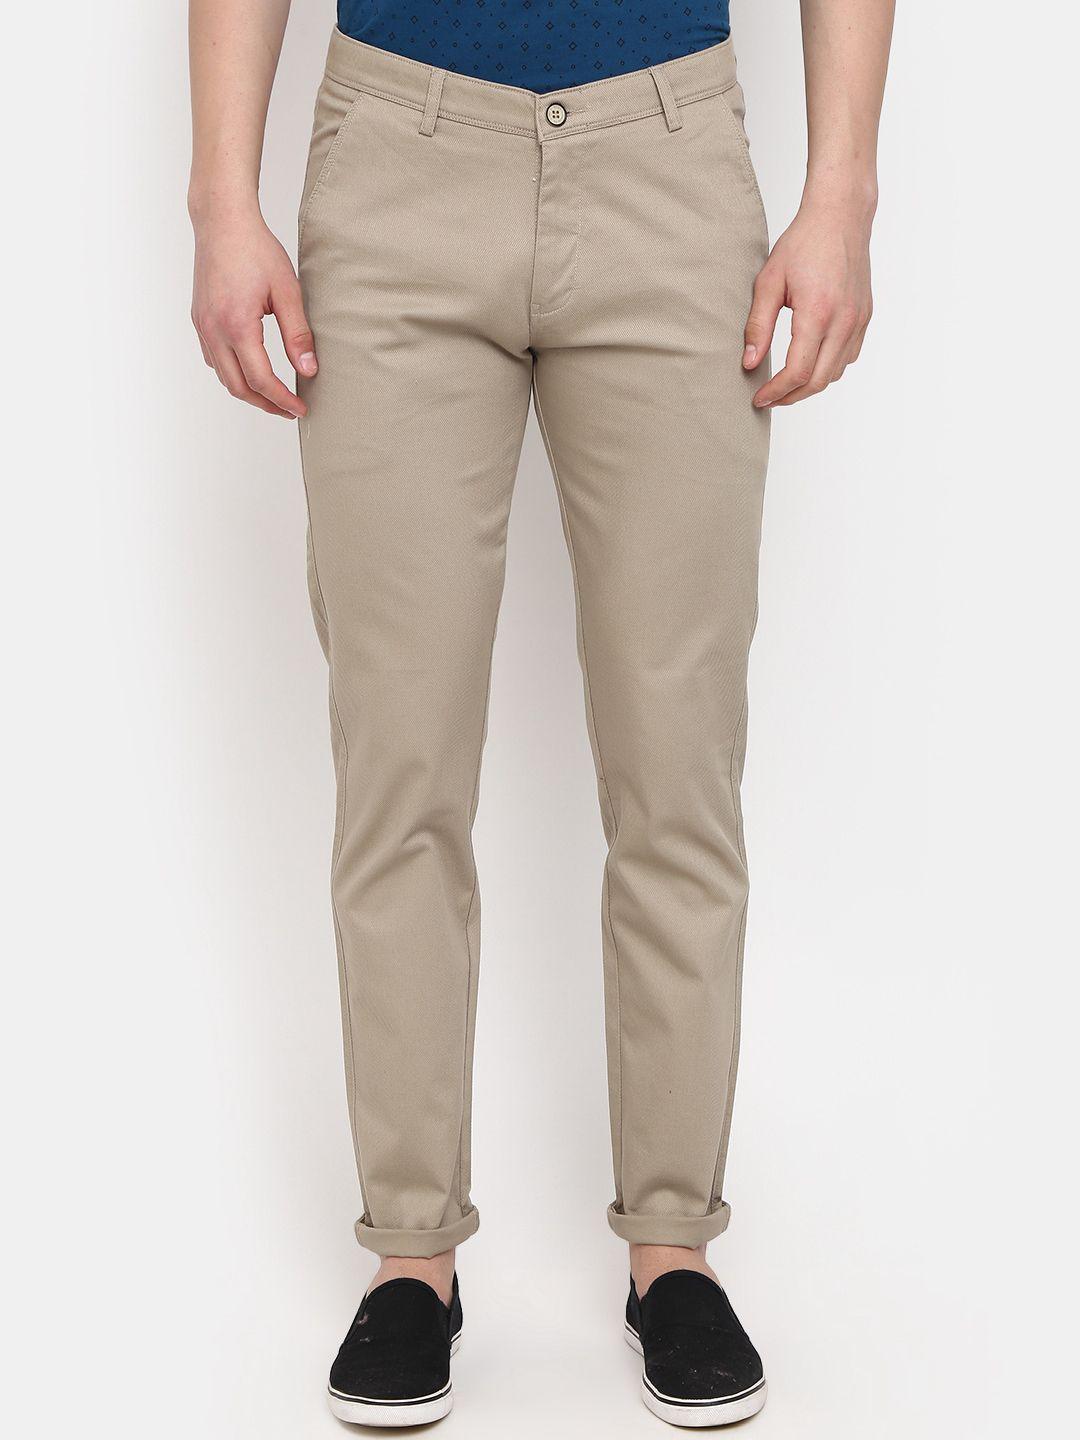 v-mart-men-slim-fit-mid-rise-cotton-trousers